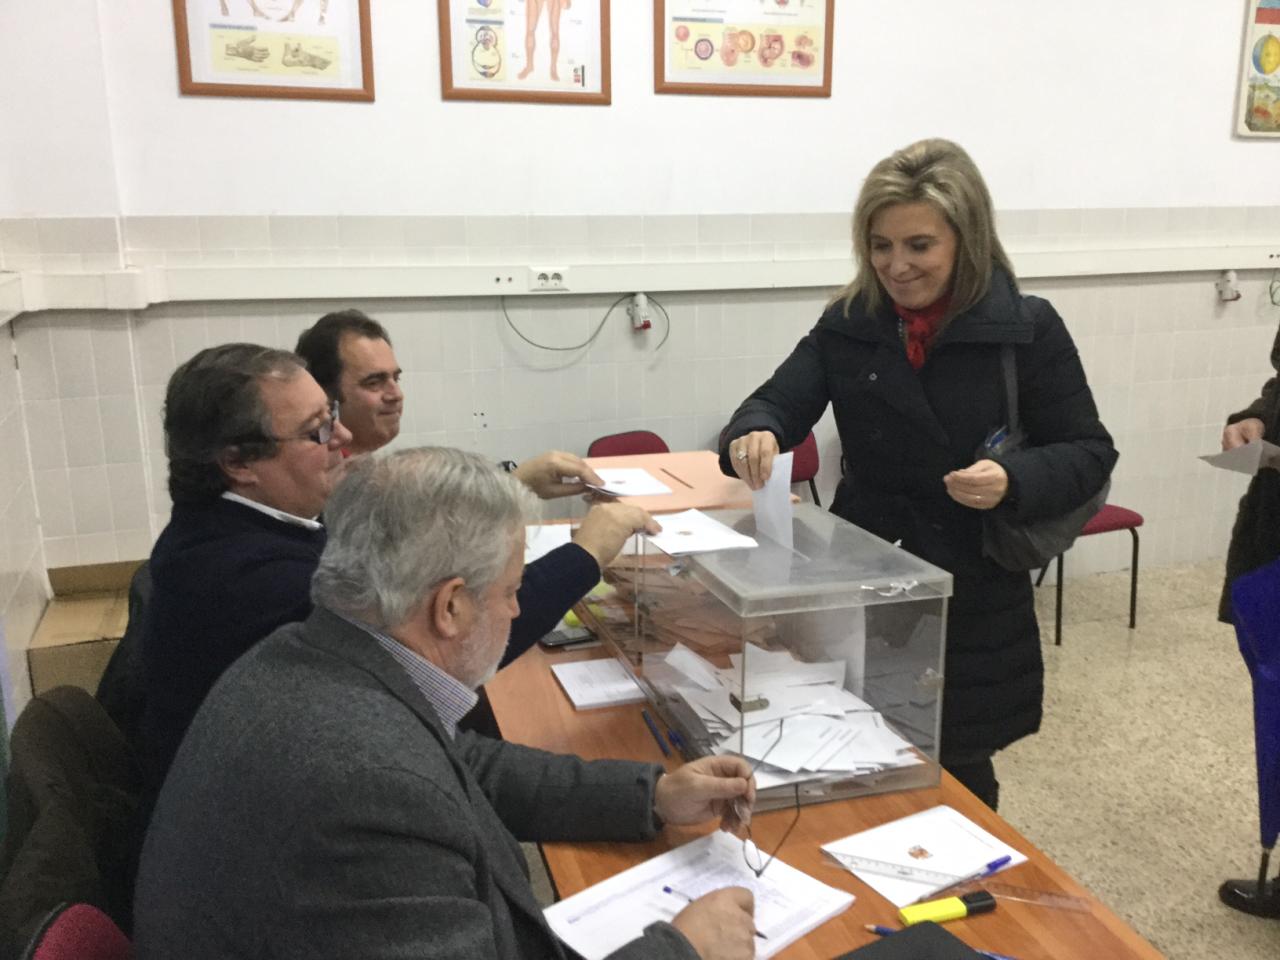 La delegada del Gobierno en Castilla y León ejerce su derecho al voto, durante una jornada electoral caracterizada por la normalidad